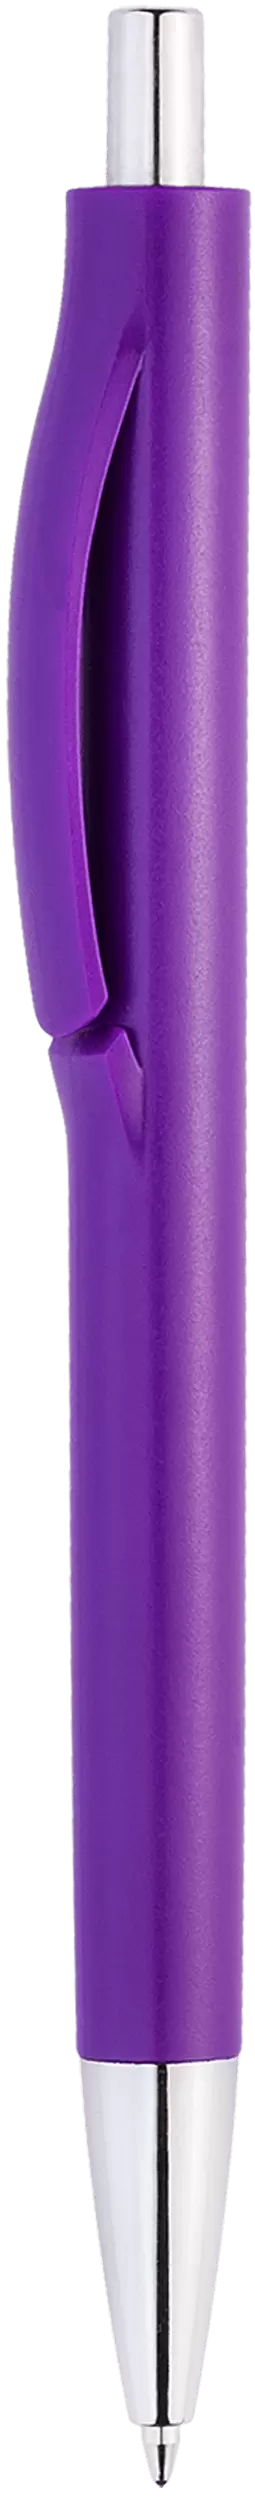 Ручка IGLA CHROME Фиолетовая 1032.11